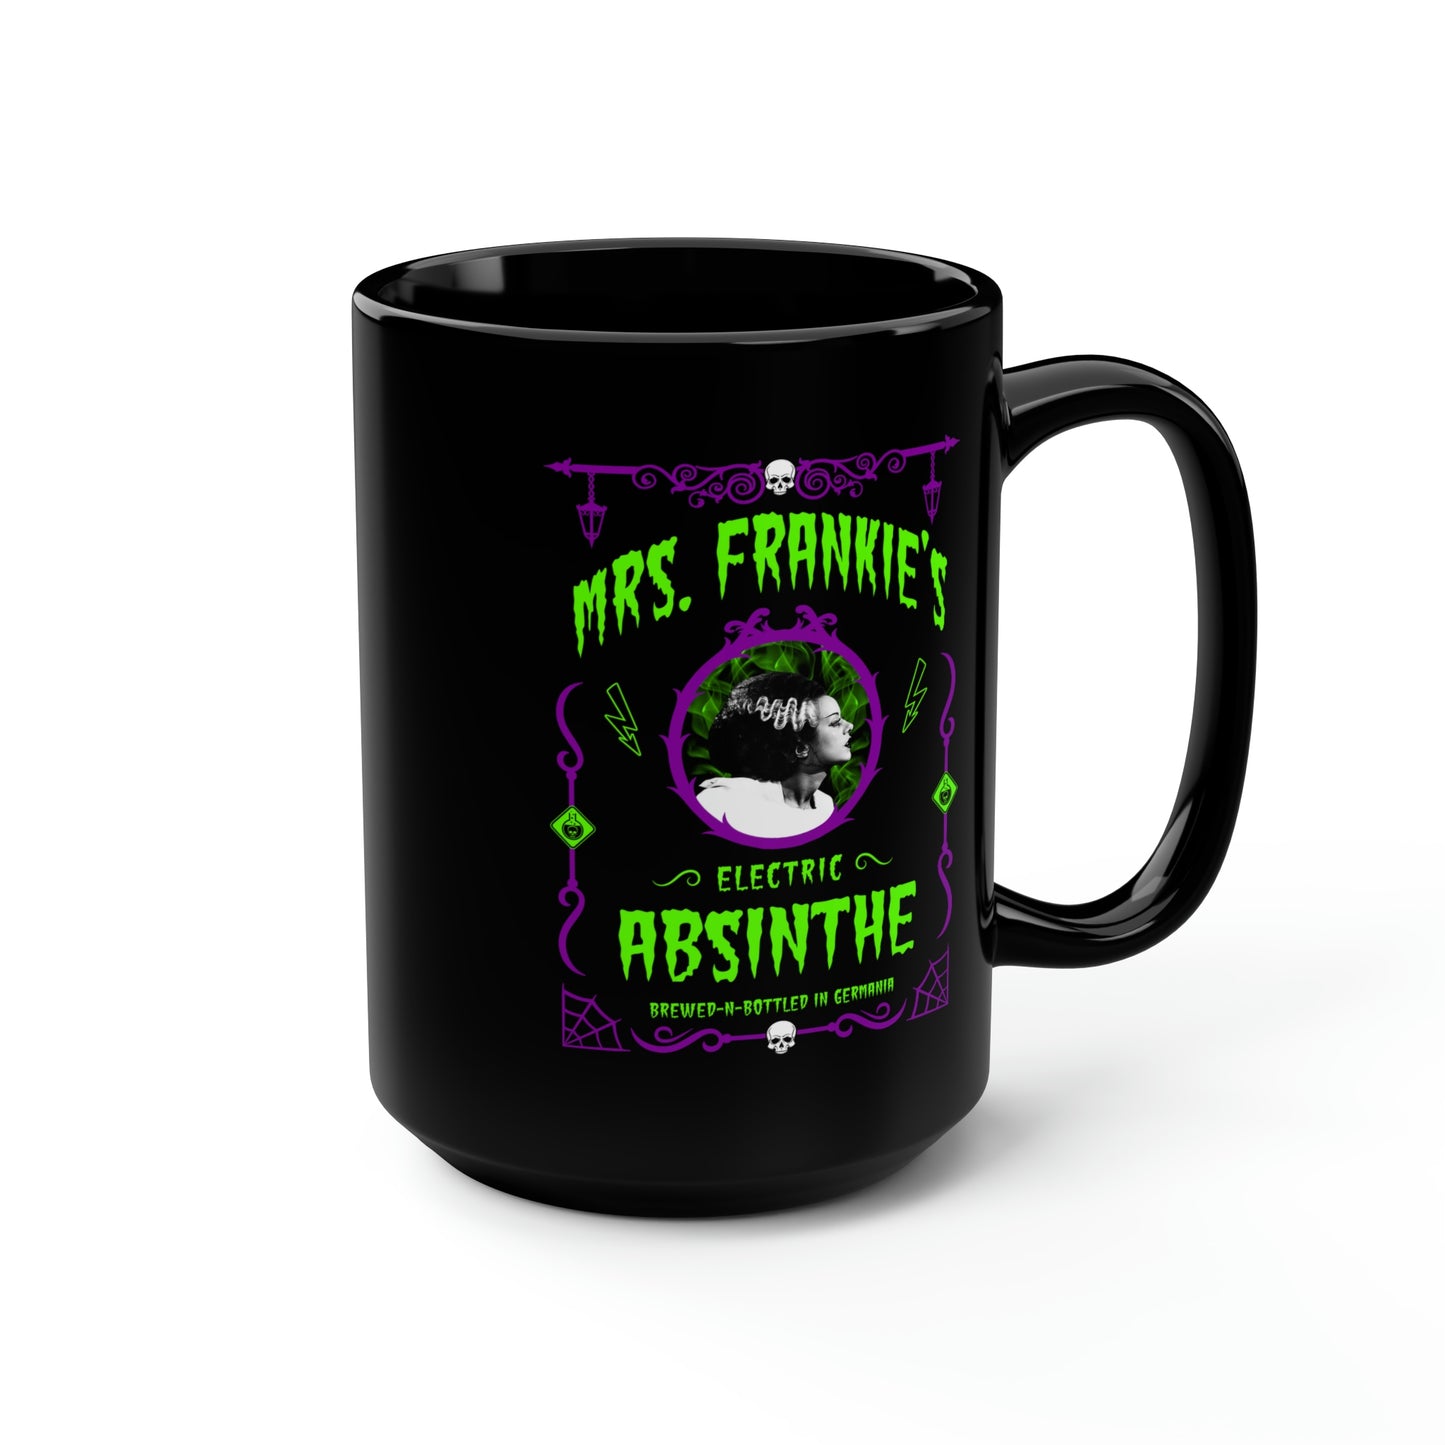 ABSINTHE MONSTERS 9 (BRIDE OF FRANKIE) Black Mug, 15oz